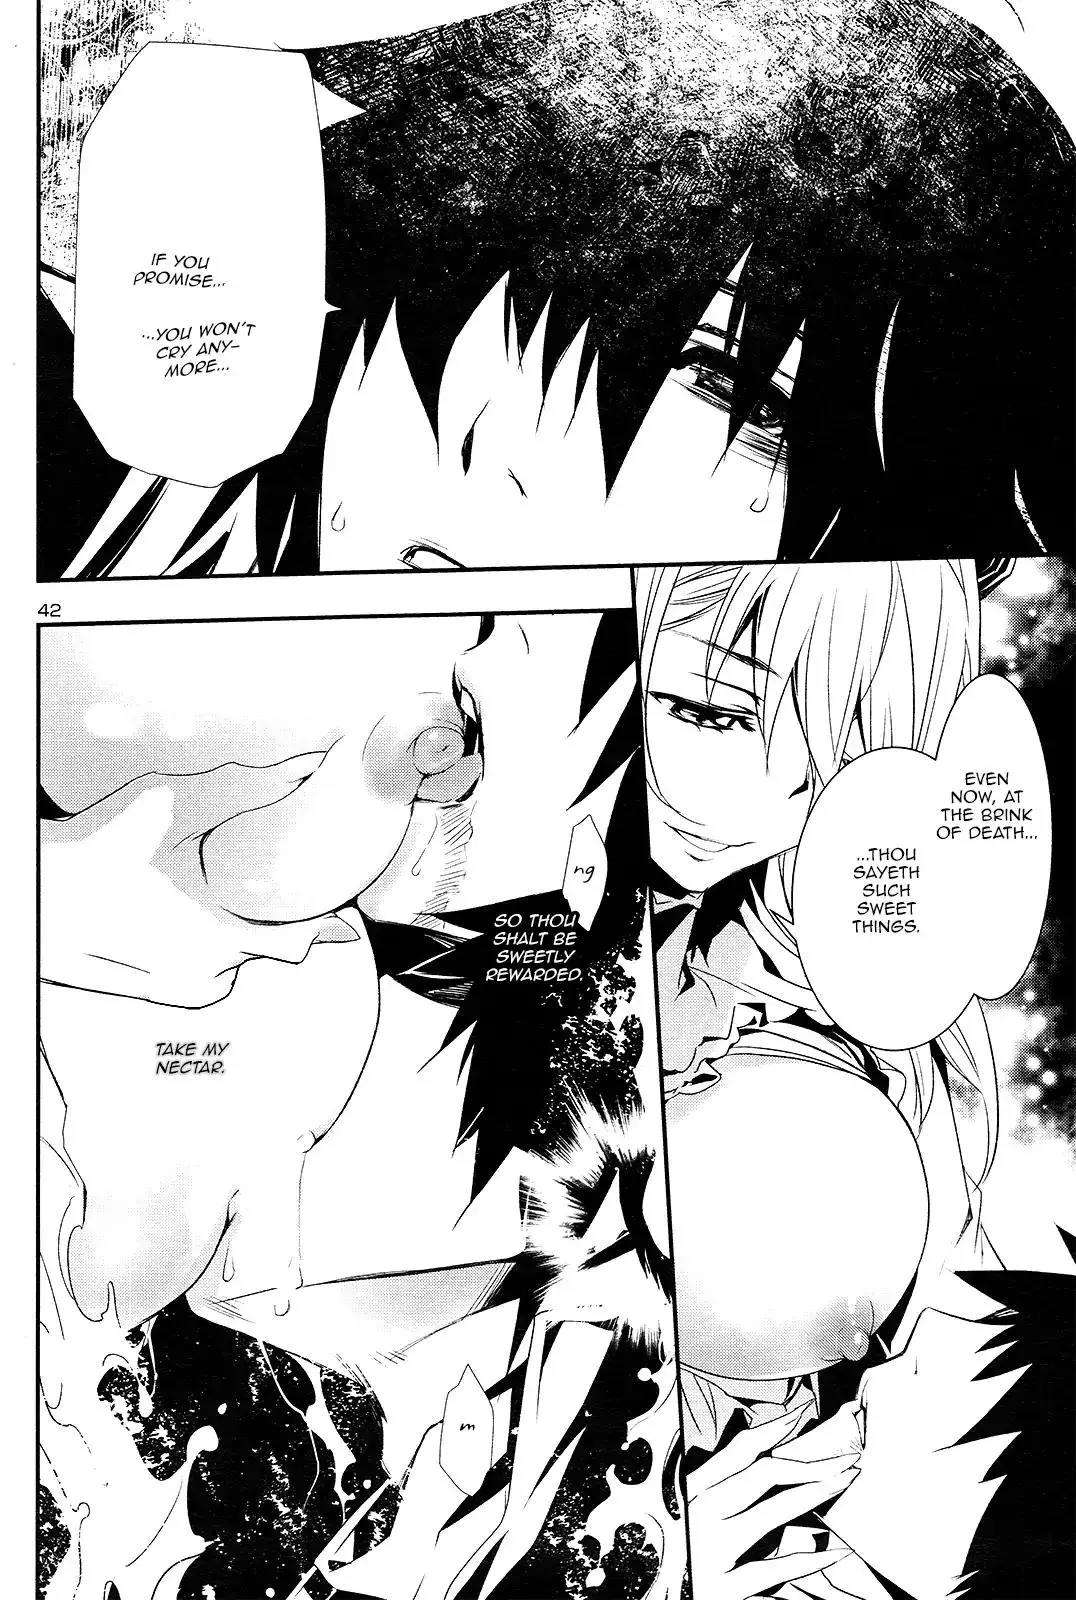 Shinju no Nectar - 1 page 41